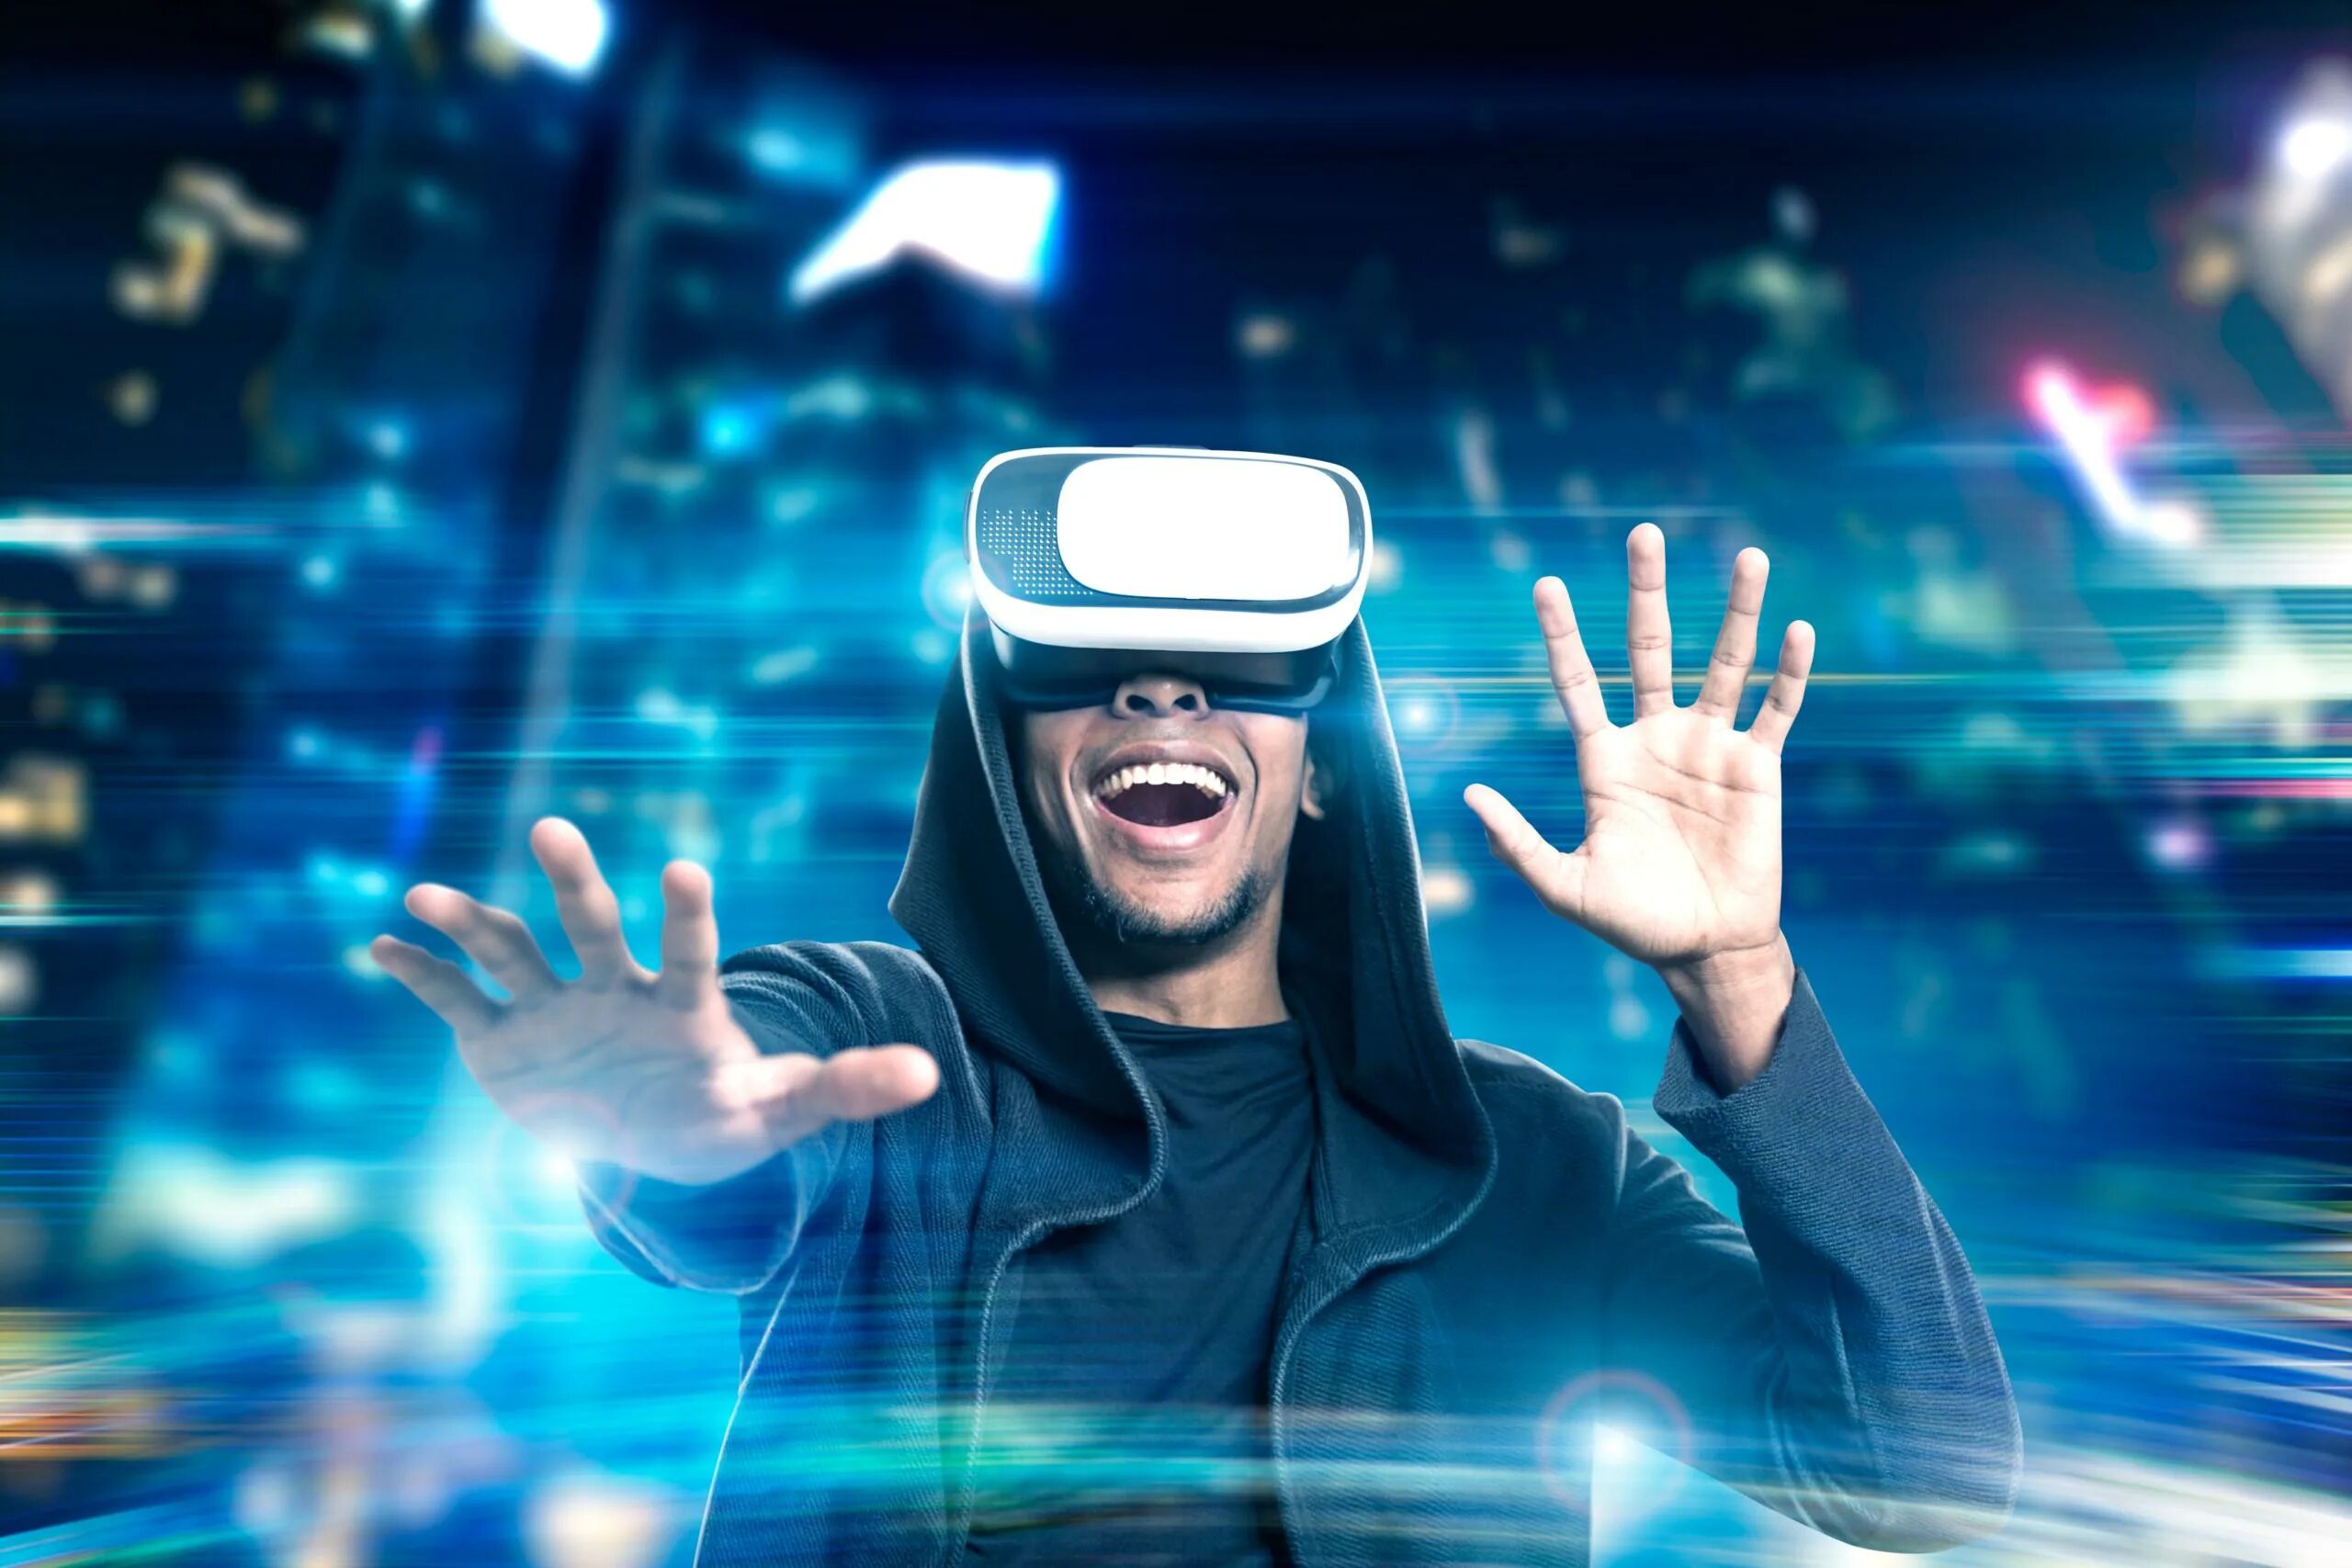 Мир виртуальности. Визуальная реальность. VR виртуальная реальность. Виртуальнаяяреальность. Человек в виртуальной реальности.